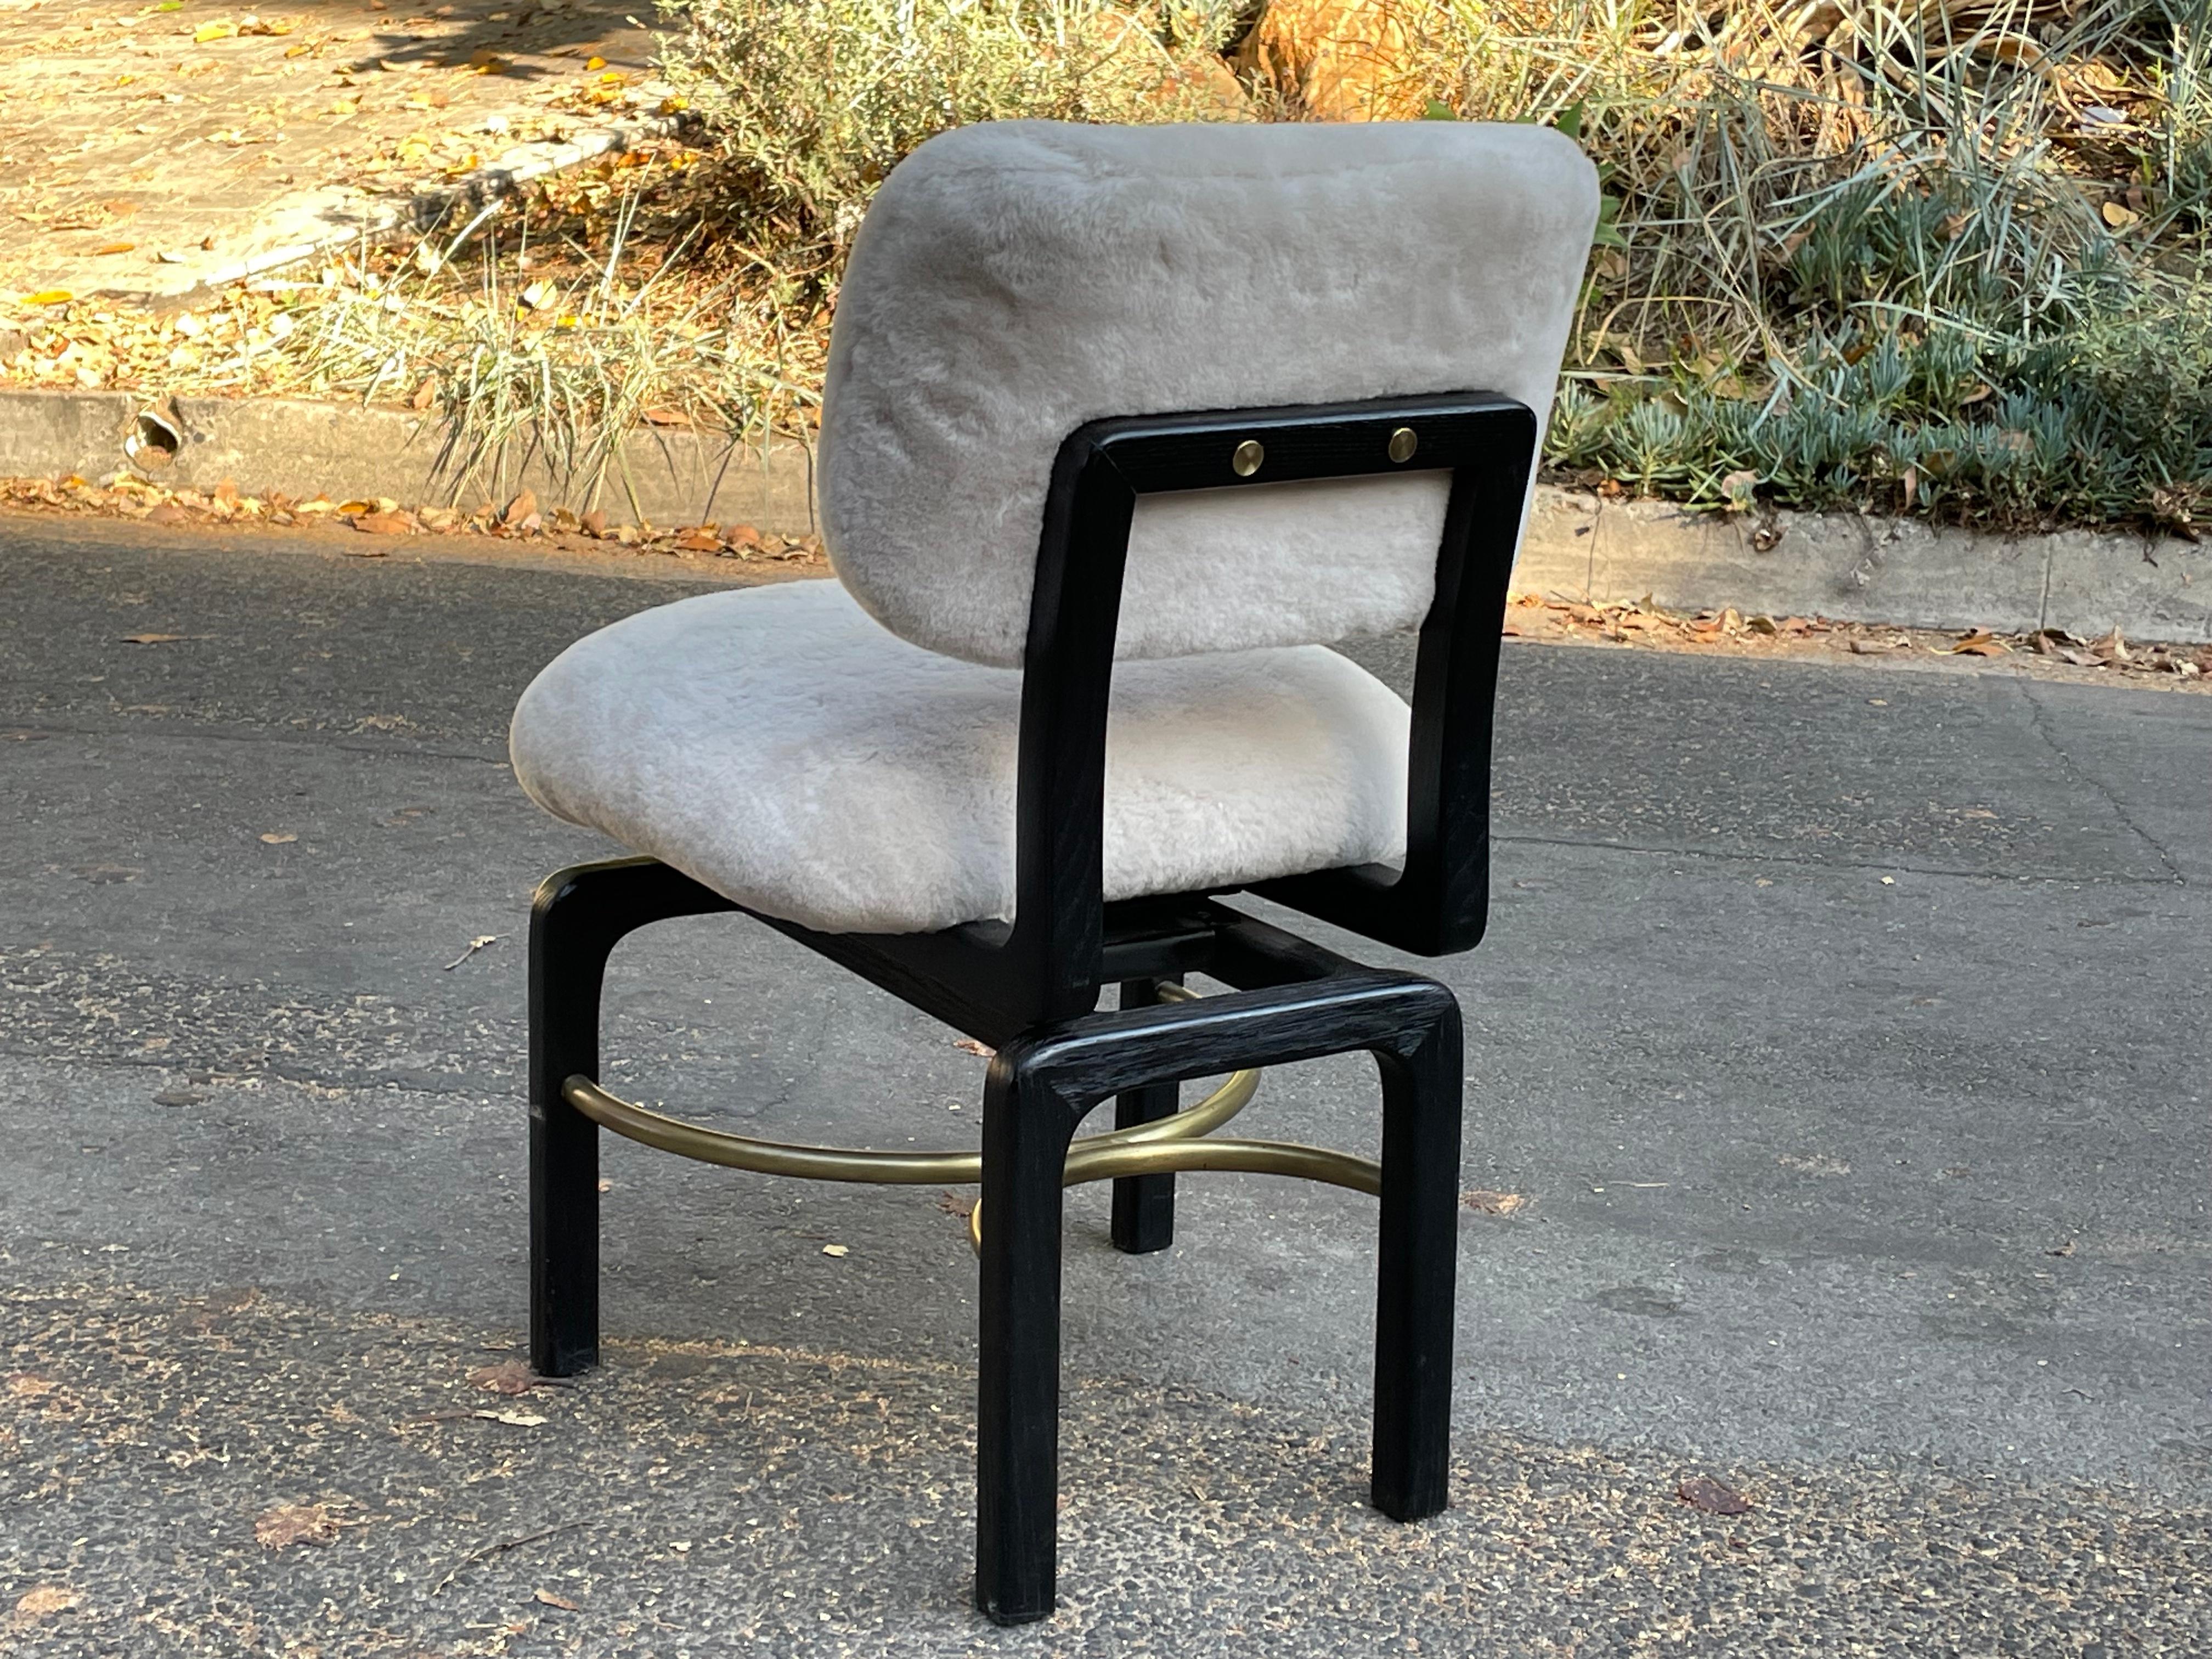 Atemberaubender, von Thomas Hayes Studio entworfener, drehbarer Beistellstuhl, gepolstert mit Shearling auf Sitz und Rücken. Wunderschöner schwarzer Massivholzrahmen mit Messingstreckern.

Dieser Stuhl hat tolle Linien.

Ausgezeichneter